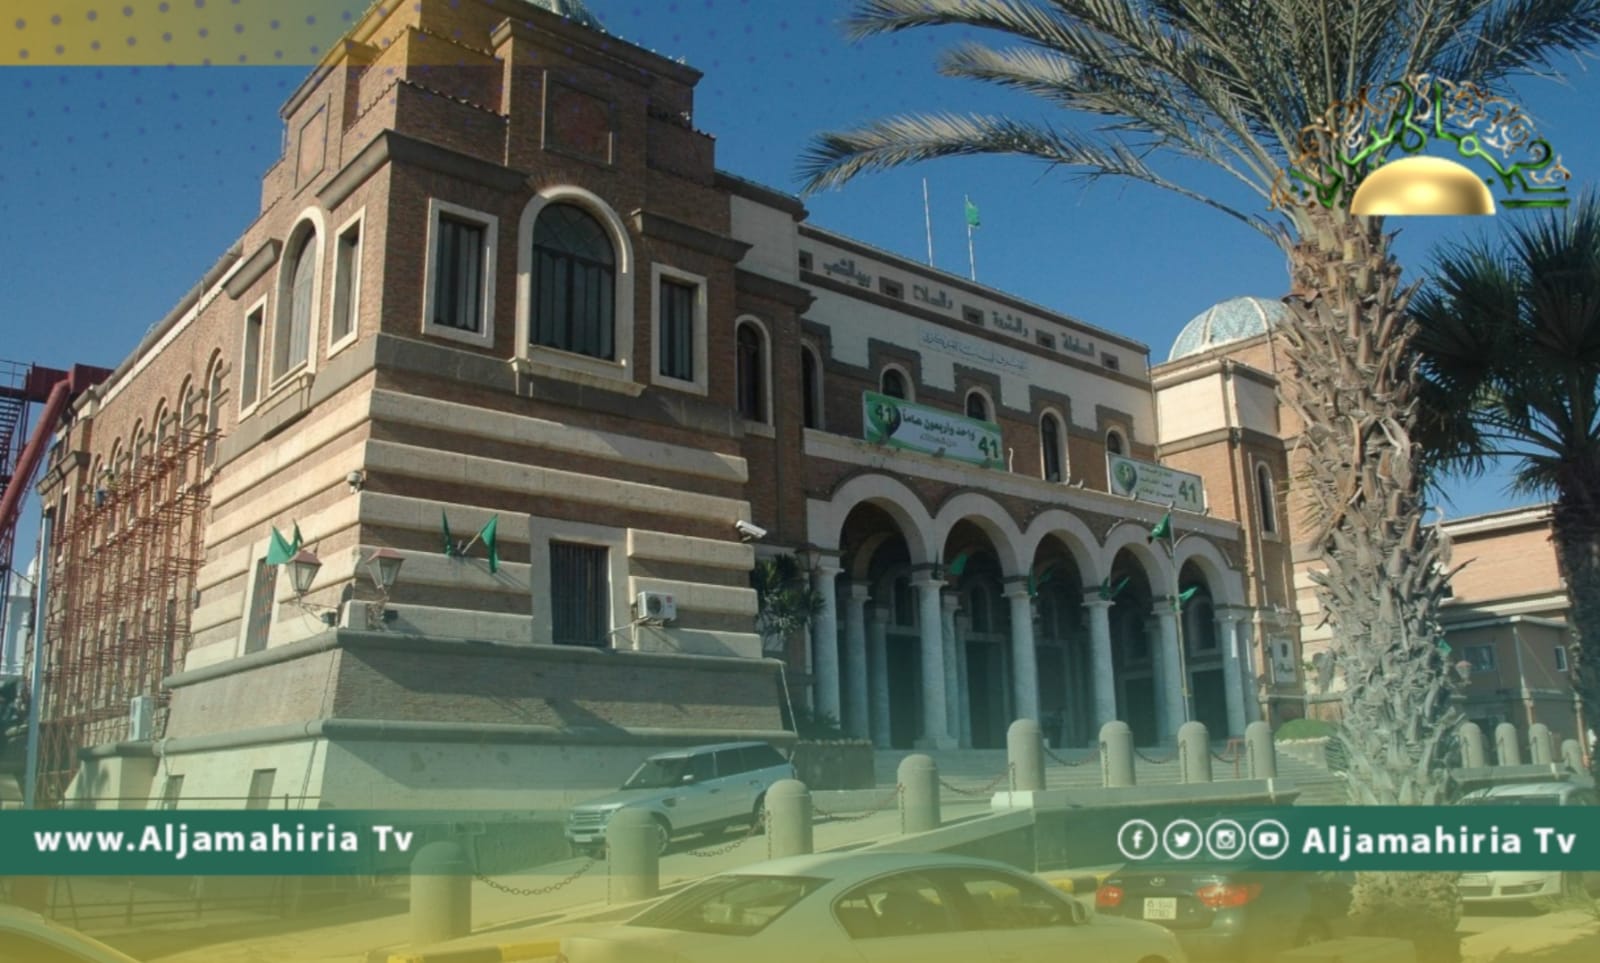 مصرف ليبيا المركزي يحذر من رسائل وهمية لسرقة أموال وبيانات العملاء